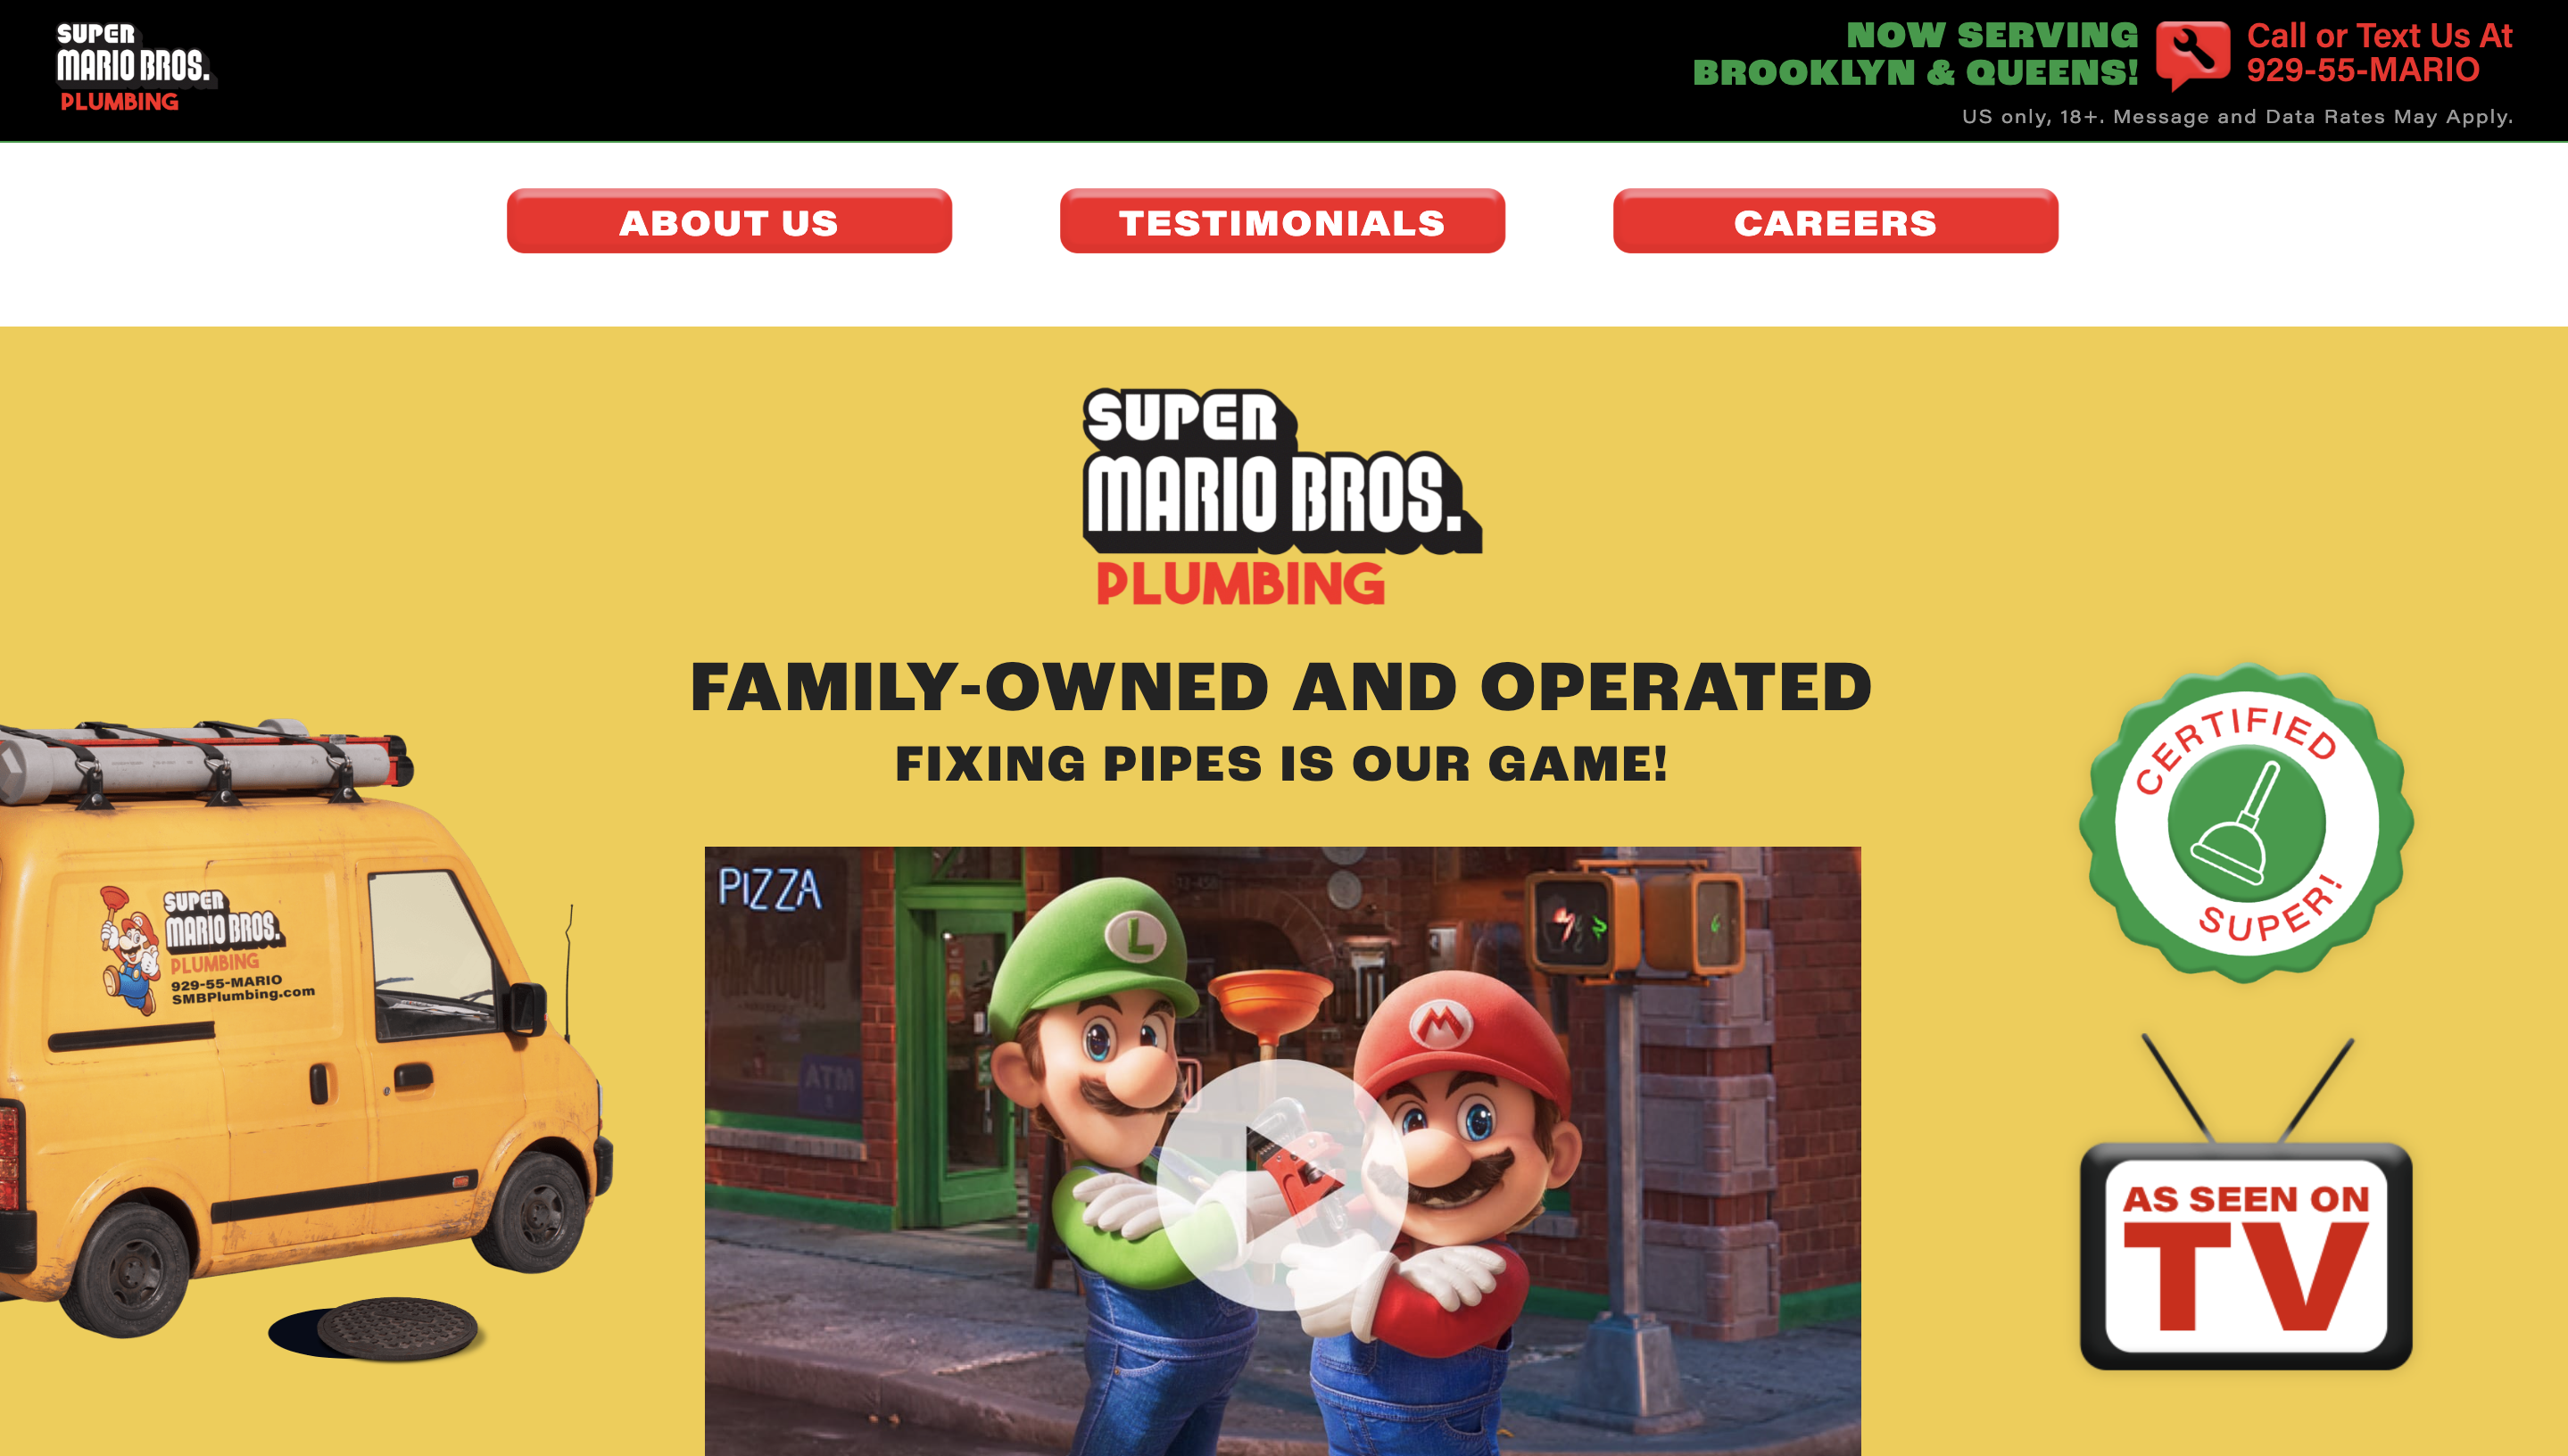 Audiense blog - Super Mario Bros. - minisite